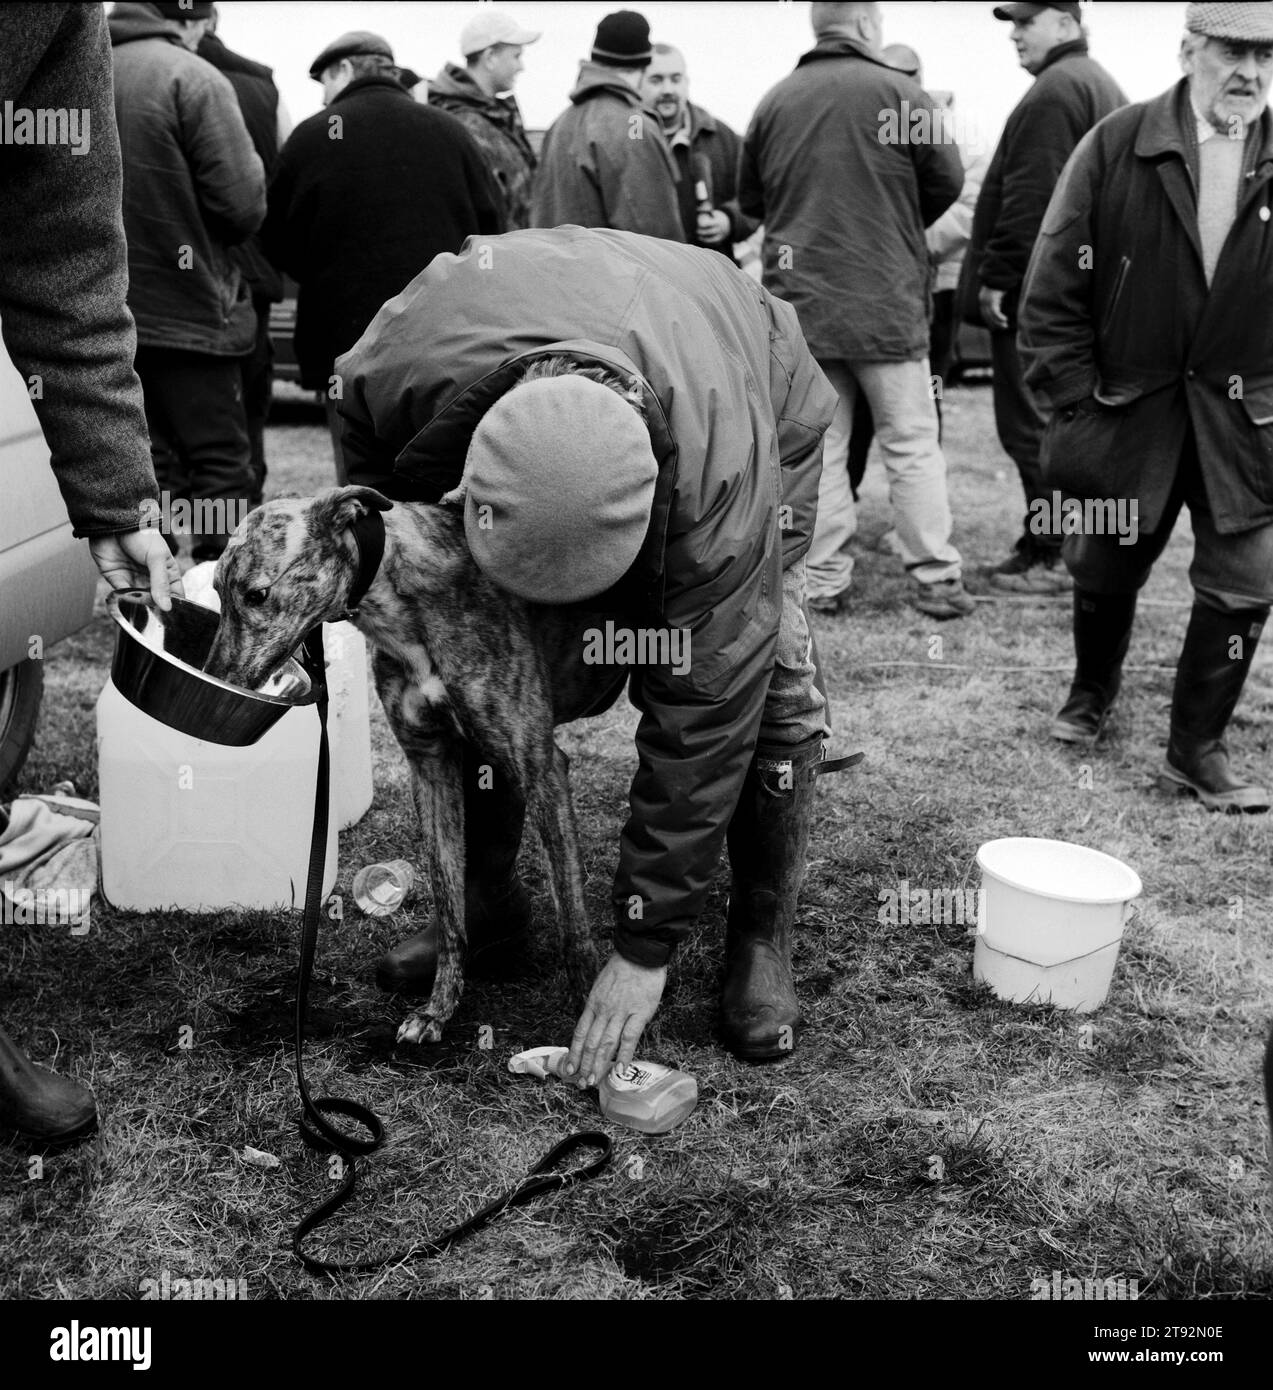 Hare coursing. Un entraîneur frotte un de ses lévriers et il lui donne quelque chose à manger à la fin de la coupe Waterloo. Près de Altcar, Lancashire années 2002 2000 UK HOMER SYKES Banque D'Images